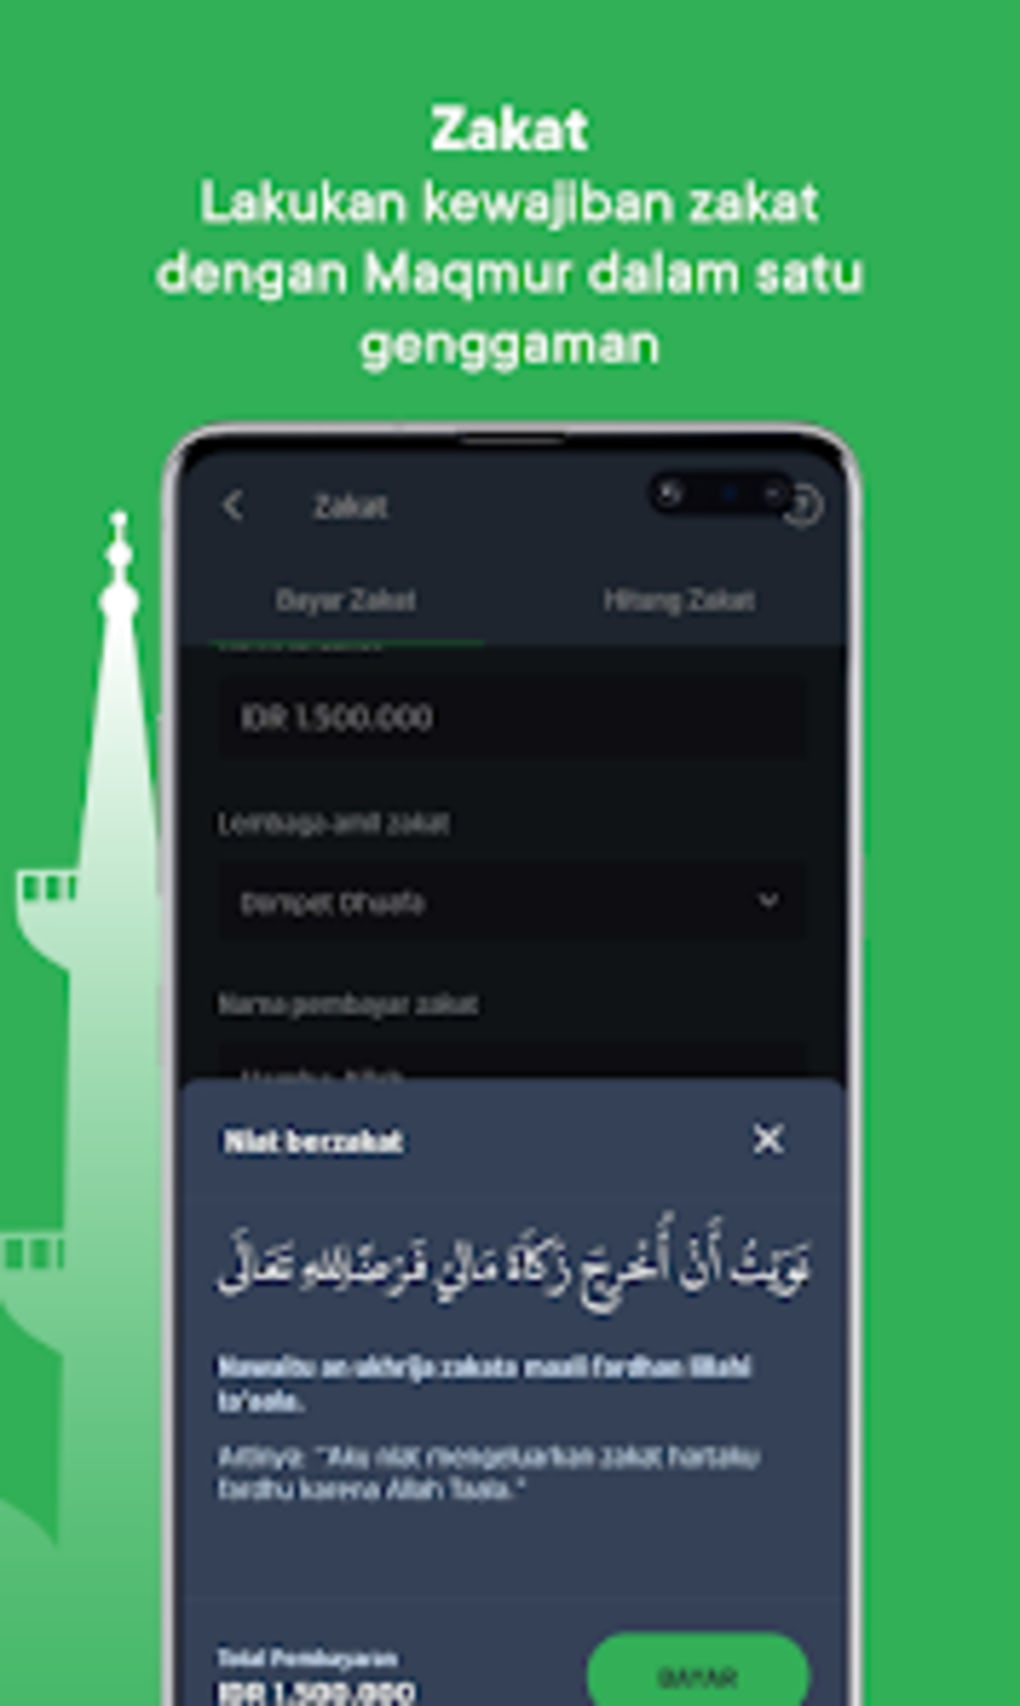 Android用 Maqmur: Aplikasi Muslim